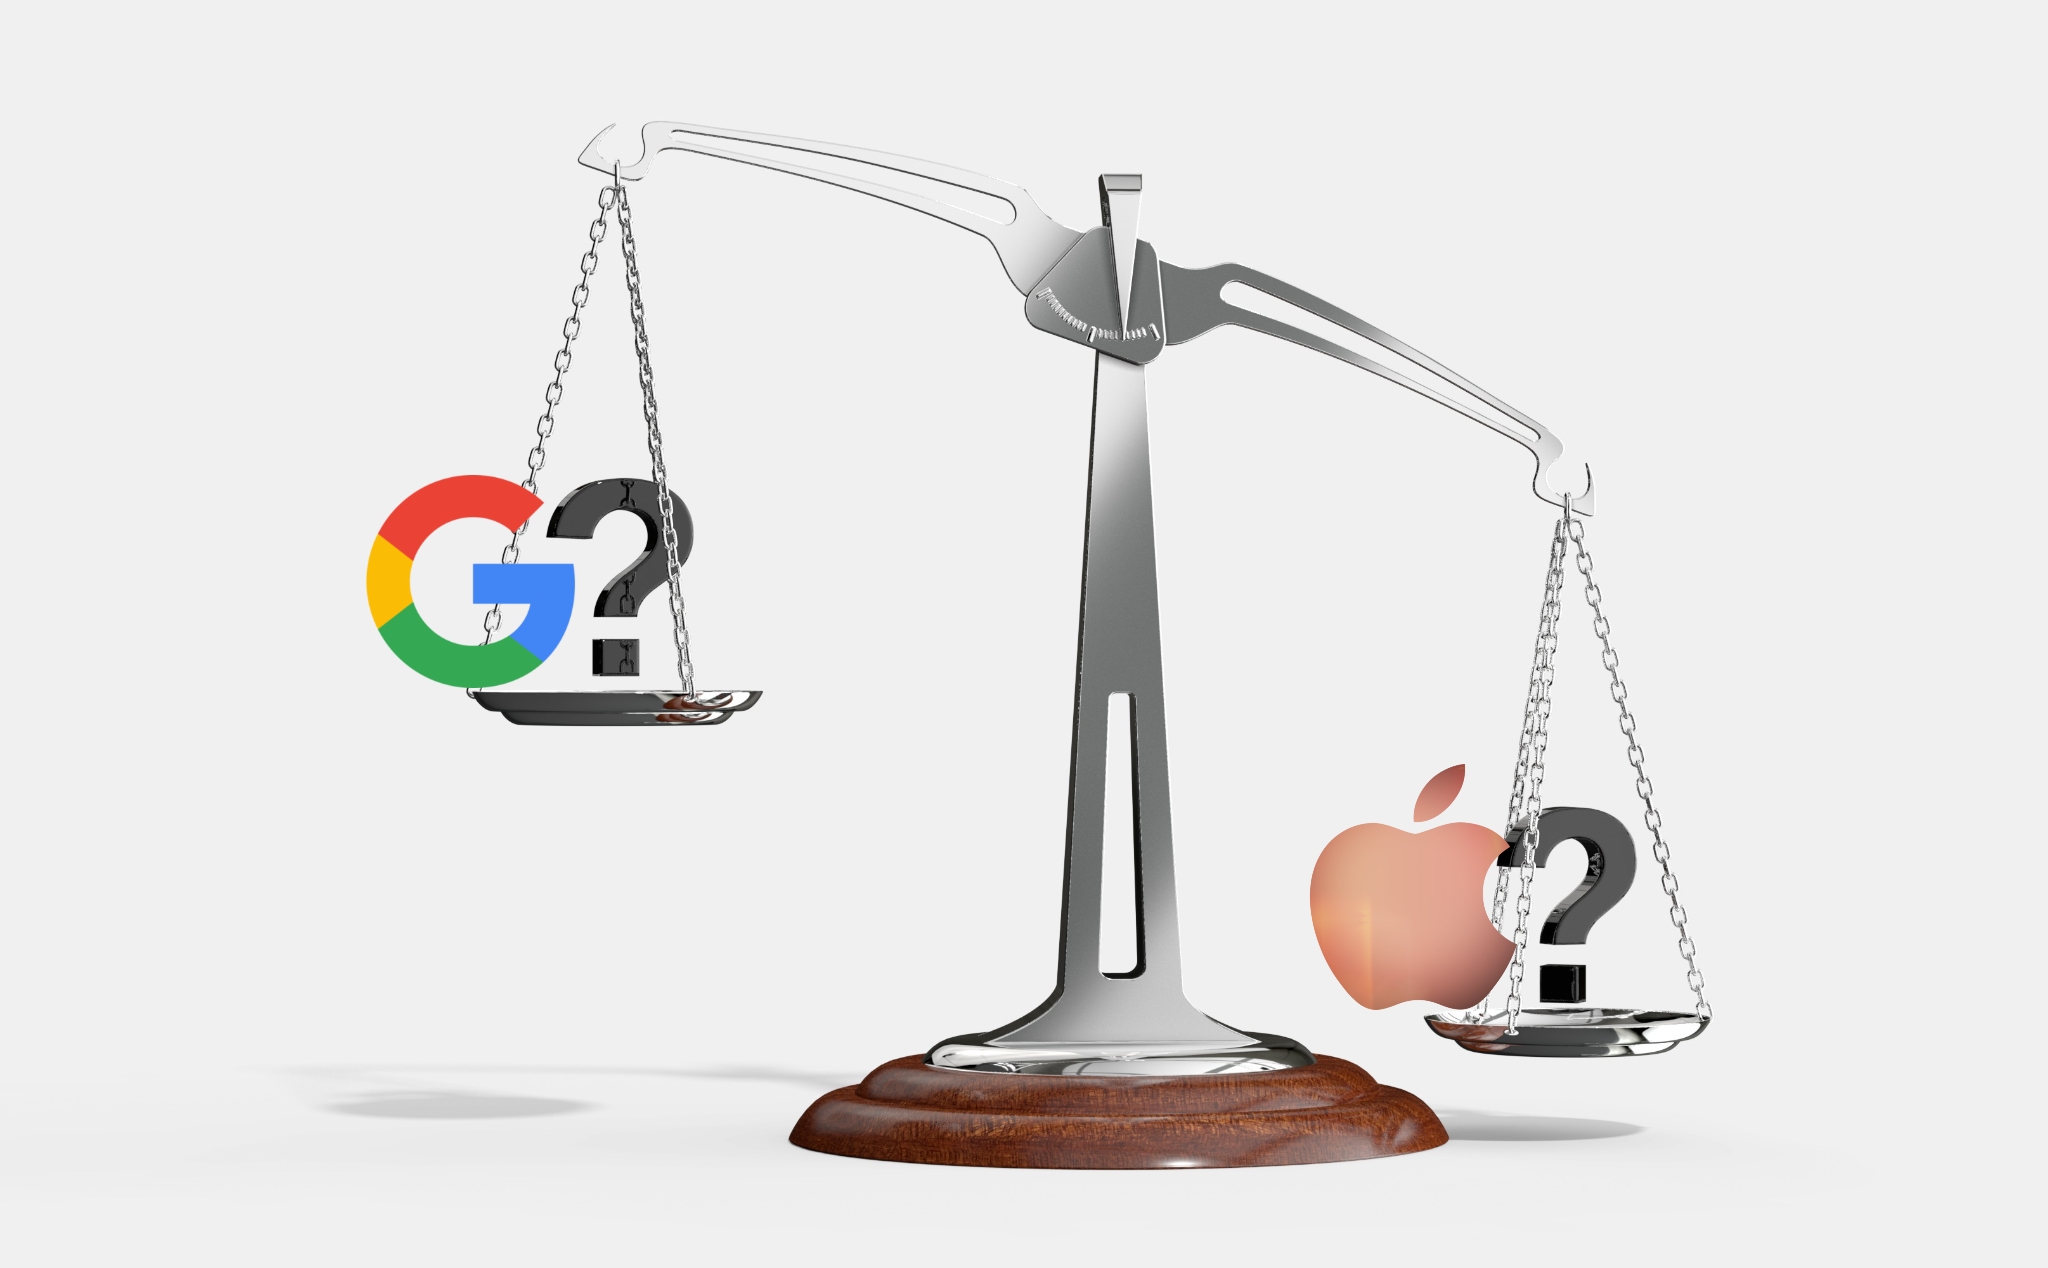 Vốn hoá có phải là tất cả khi nói về một công ty? Giá trị tương quan giữa Apple và Google thế nào?